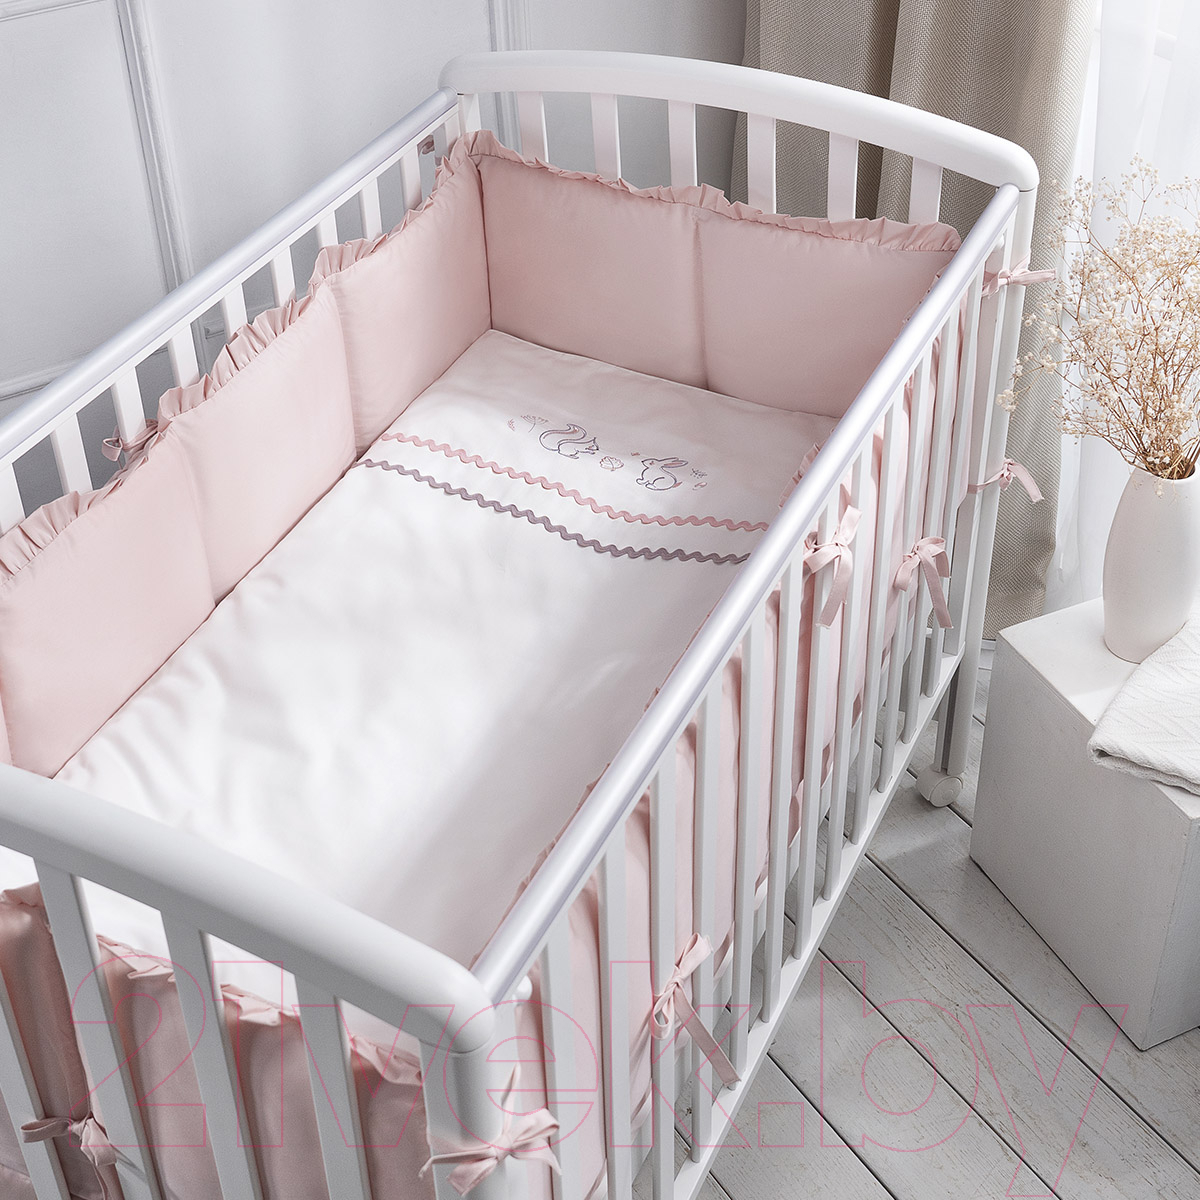 Комплект постельный для малышей Perina Toys Sateen Collection / ТСК6-03.5